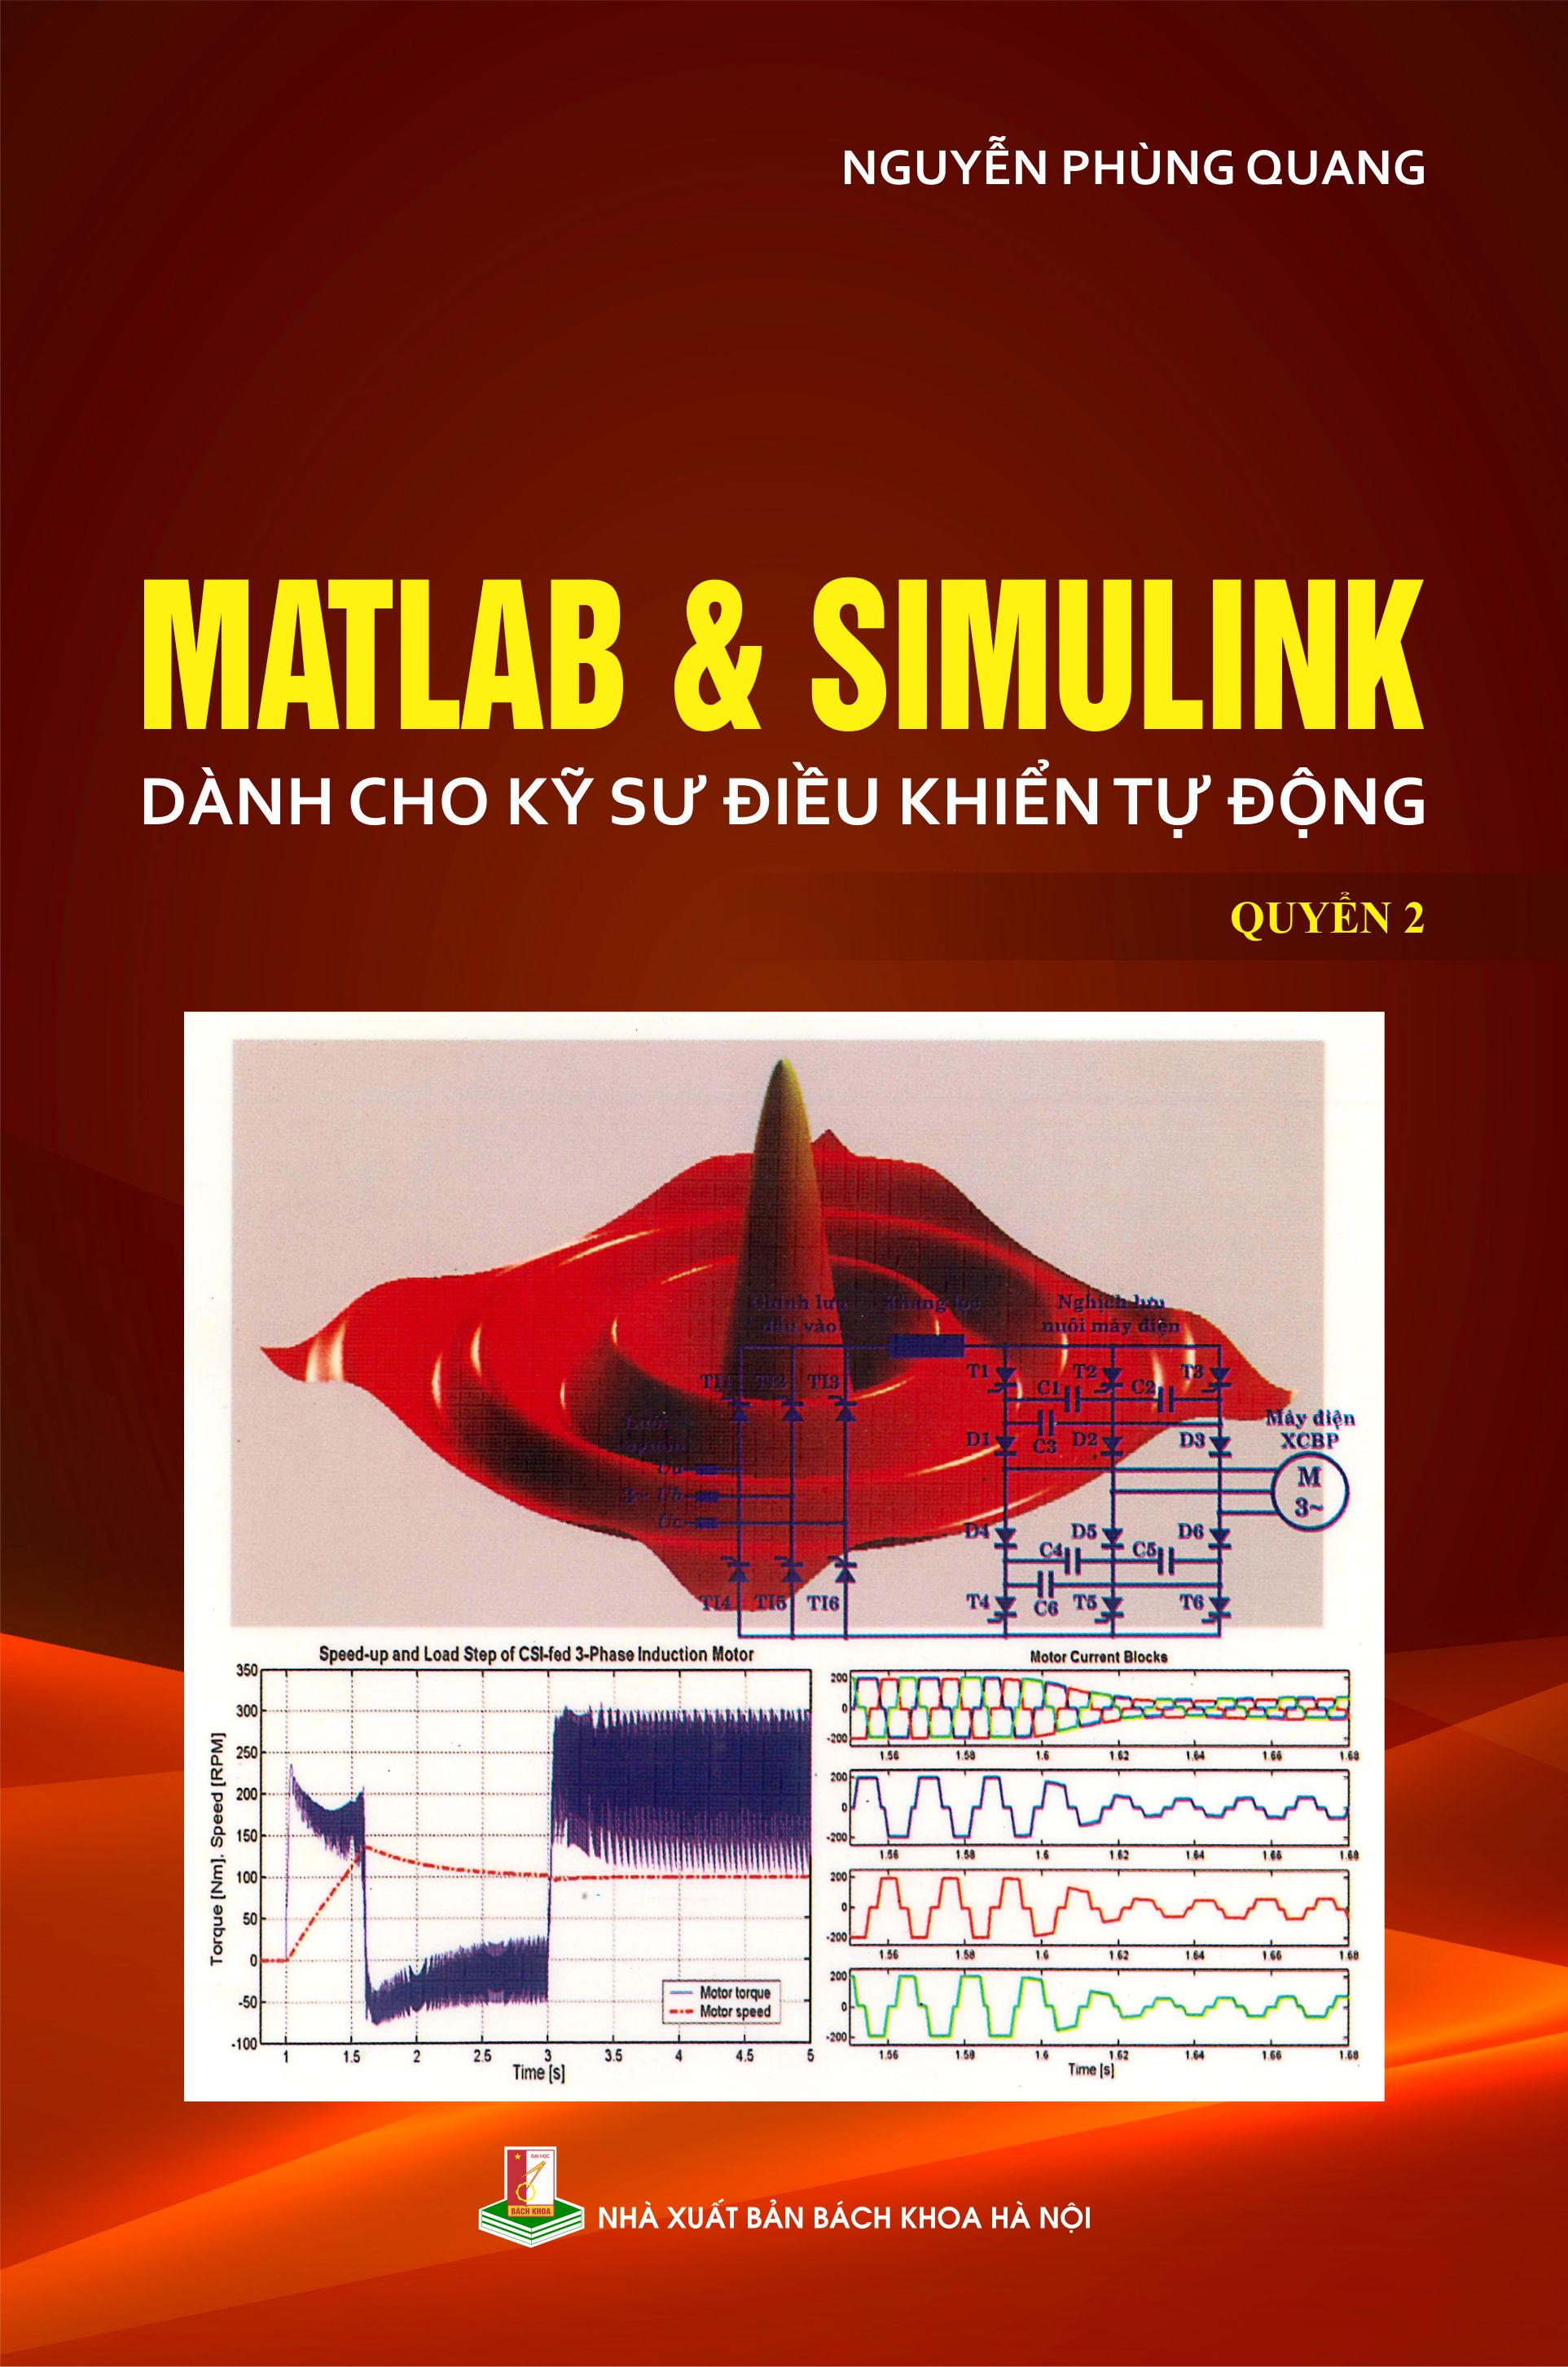 Matlab & Simulink dành cho kỹ sư điều khiển tự động Quyển 2
